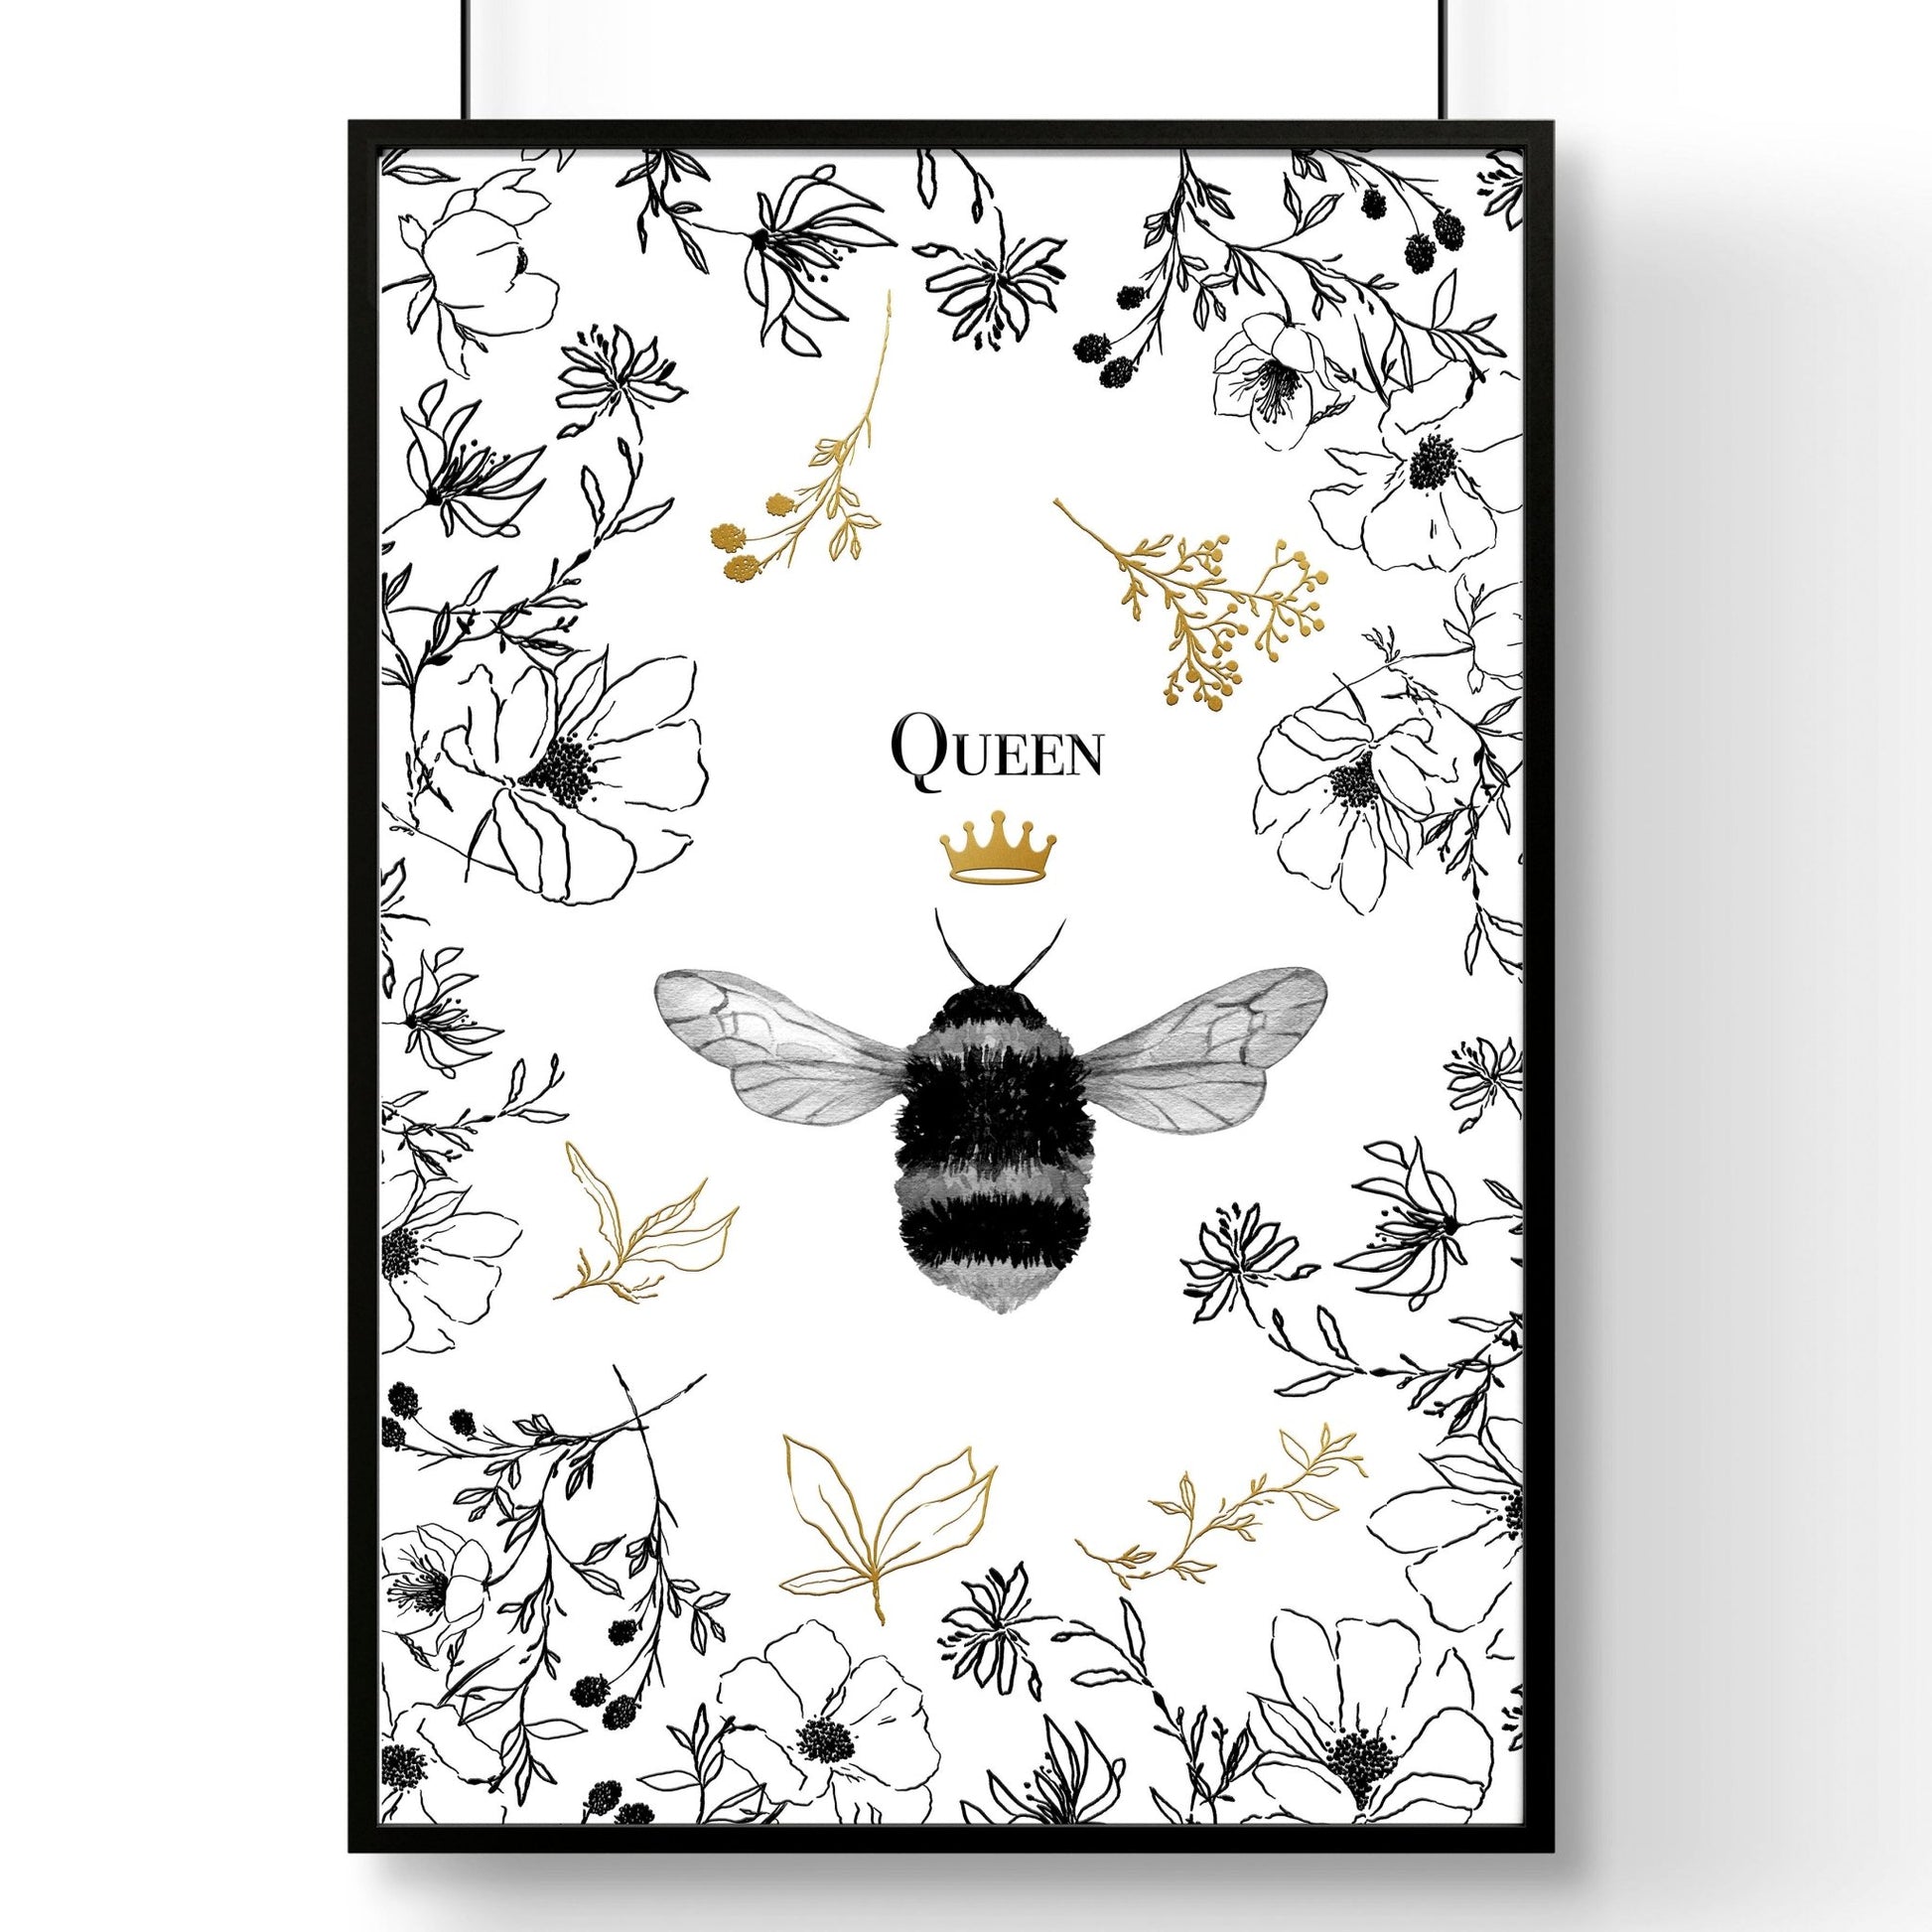 Queen Bee art | wall art print - About Wall Art